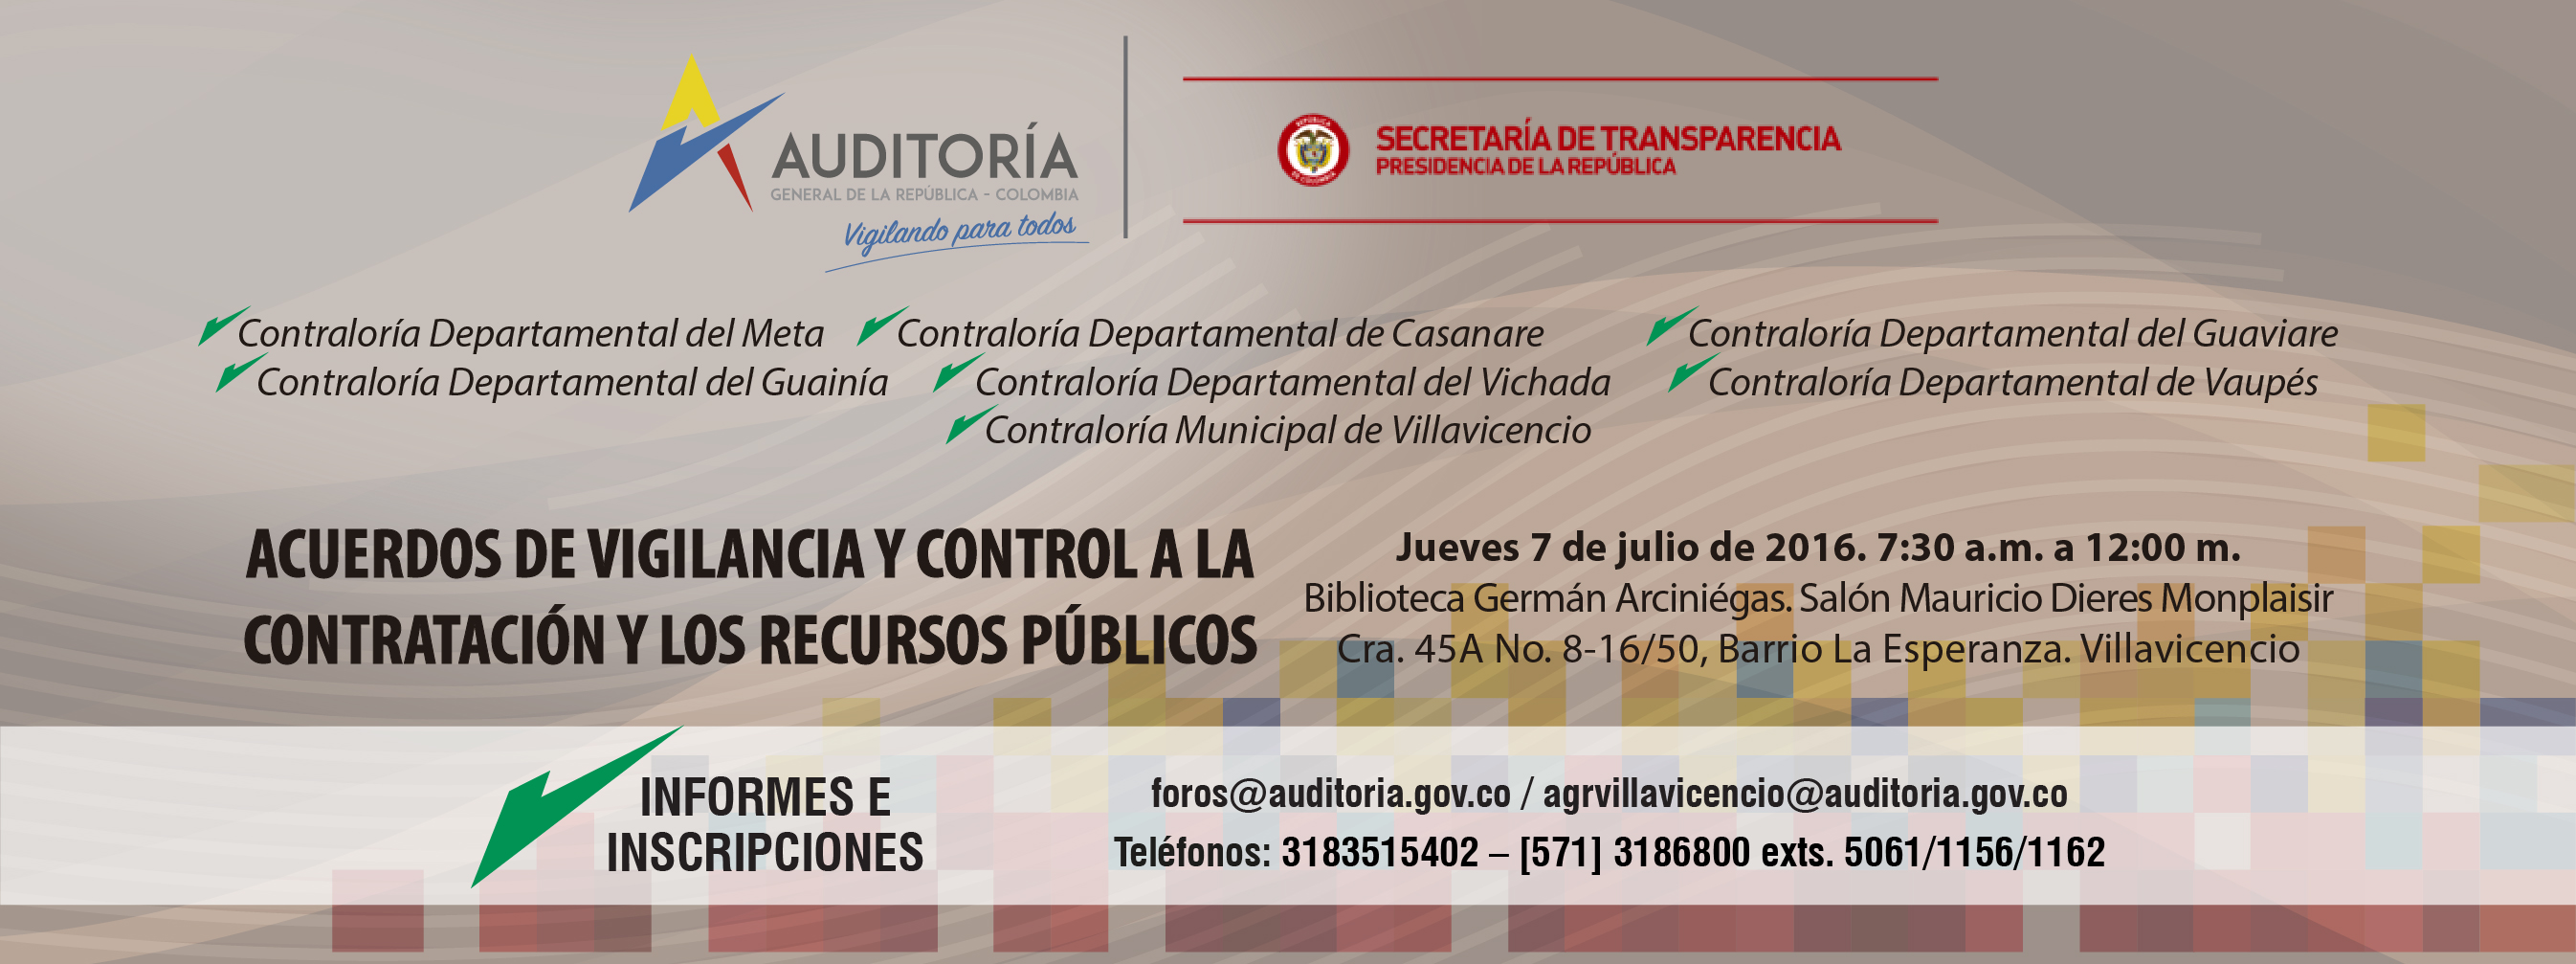 Acuerdos de vigilancia y control. Villavicencio